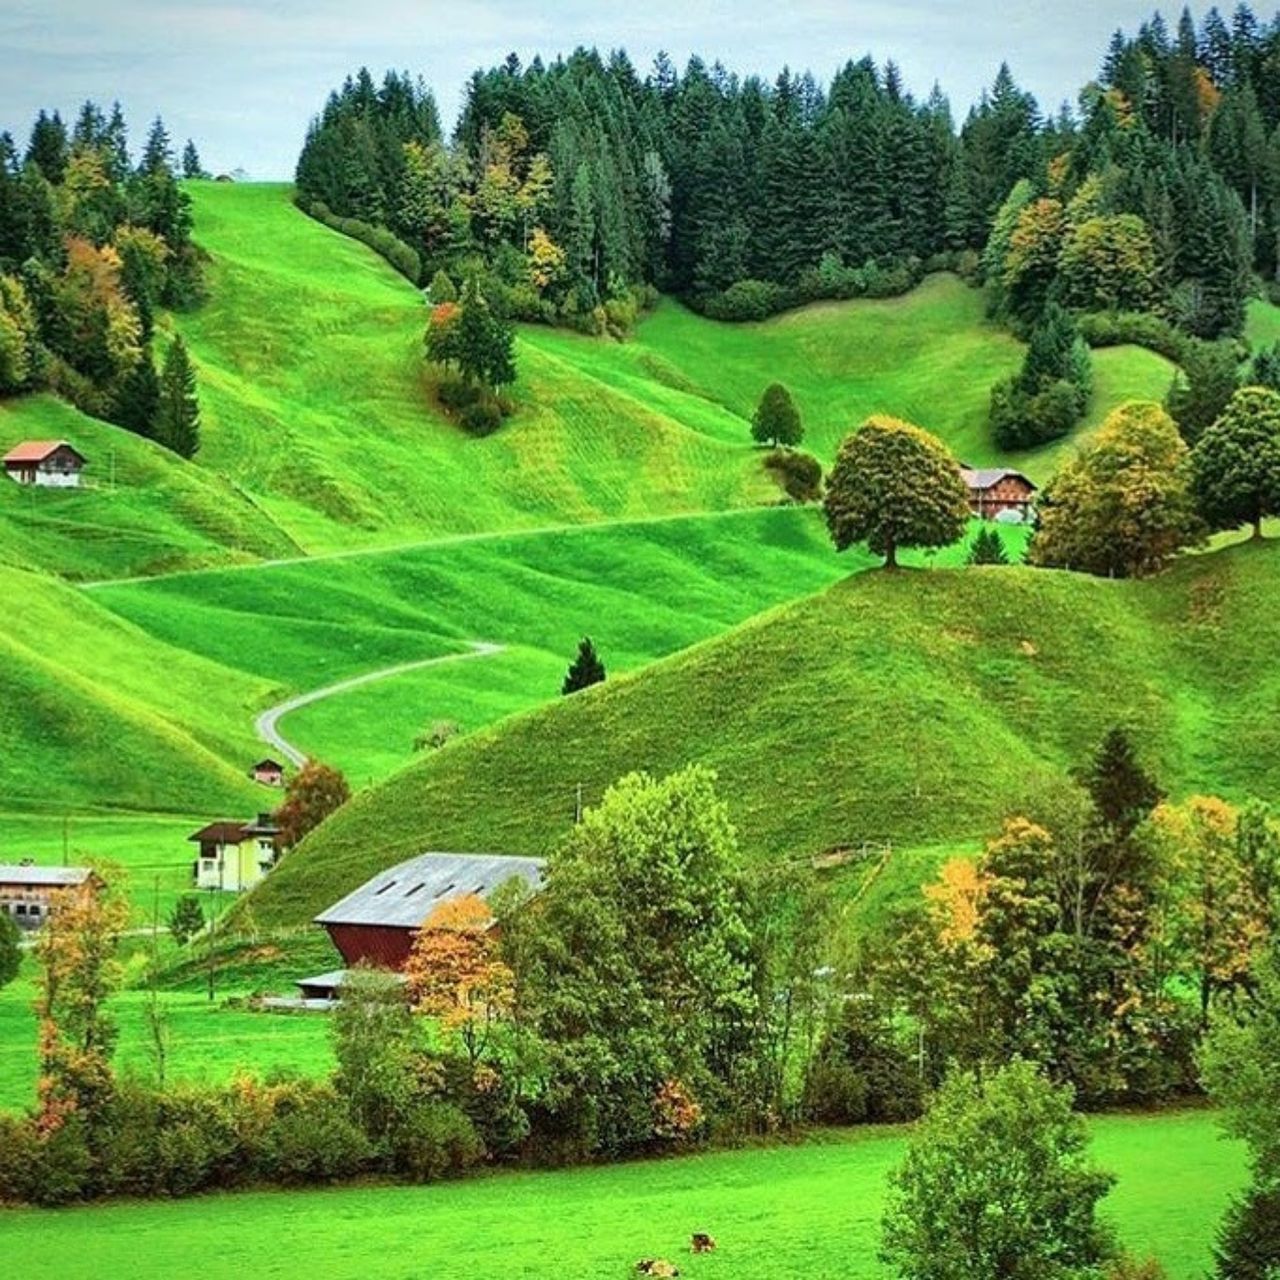 Siwizland